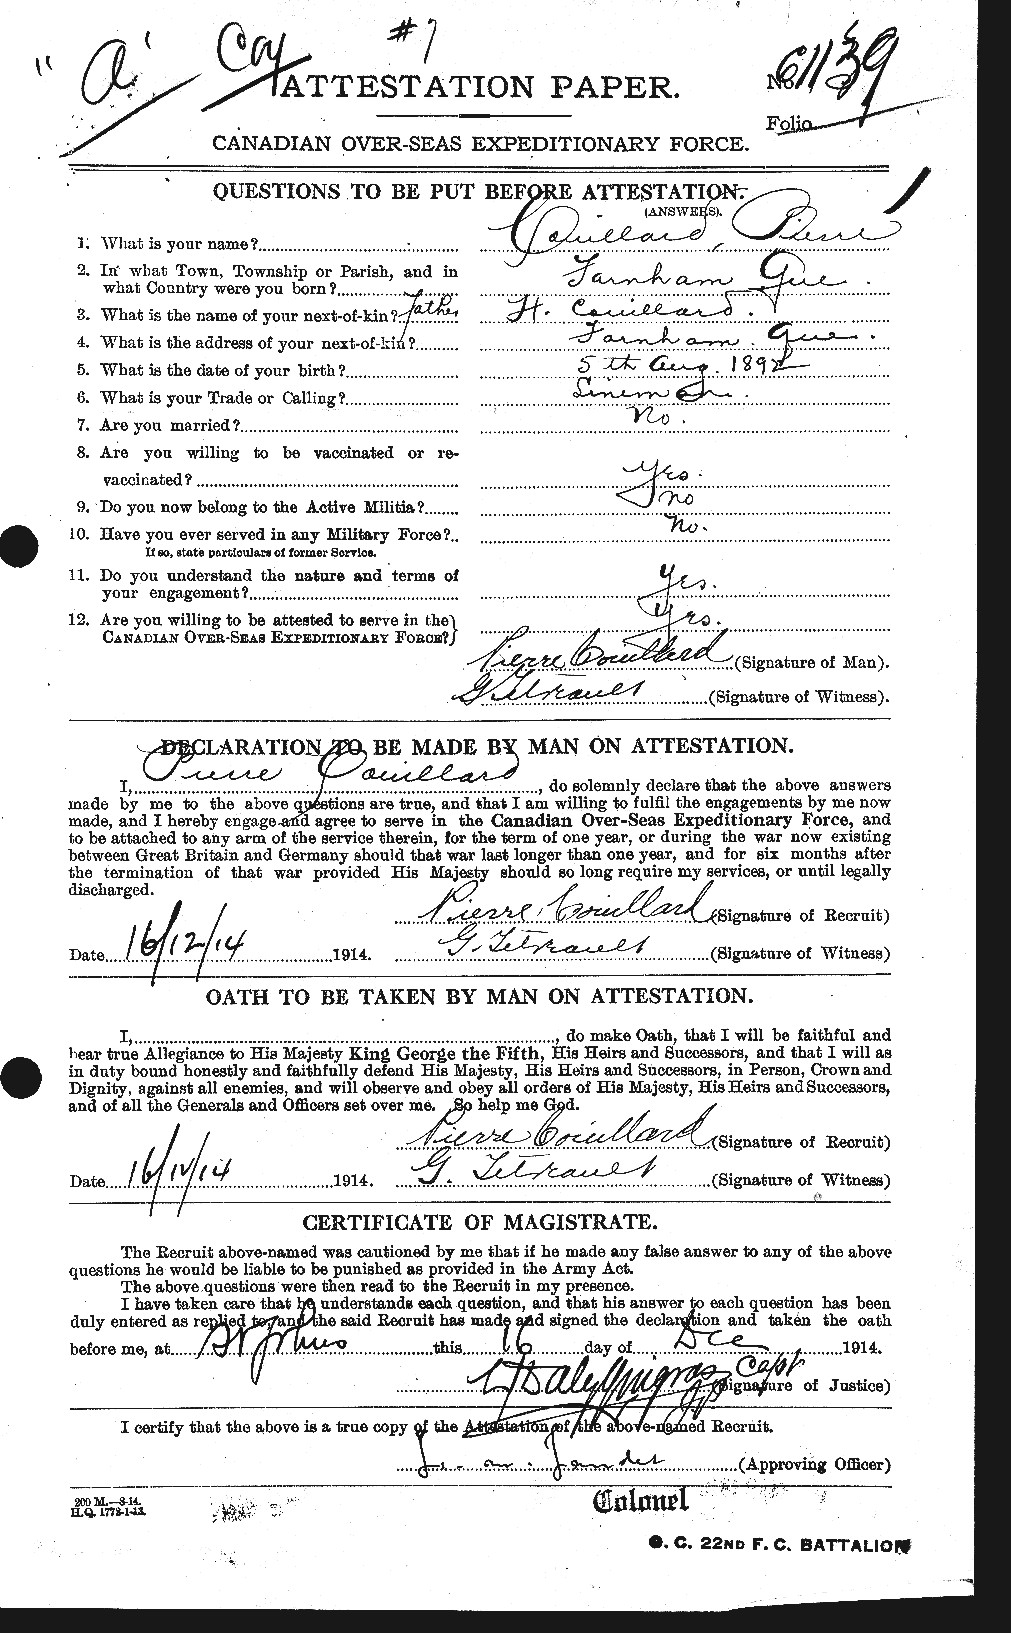 Dossiers du Personnel de la Première Guerre mondiale - CEC 057364a